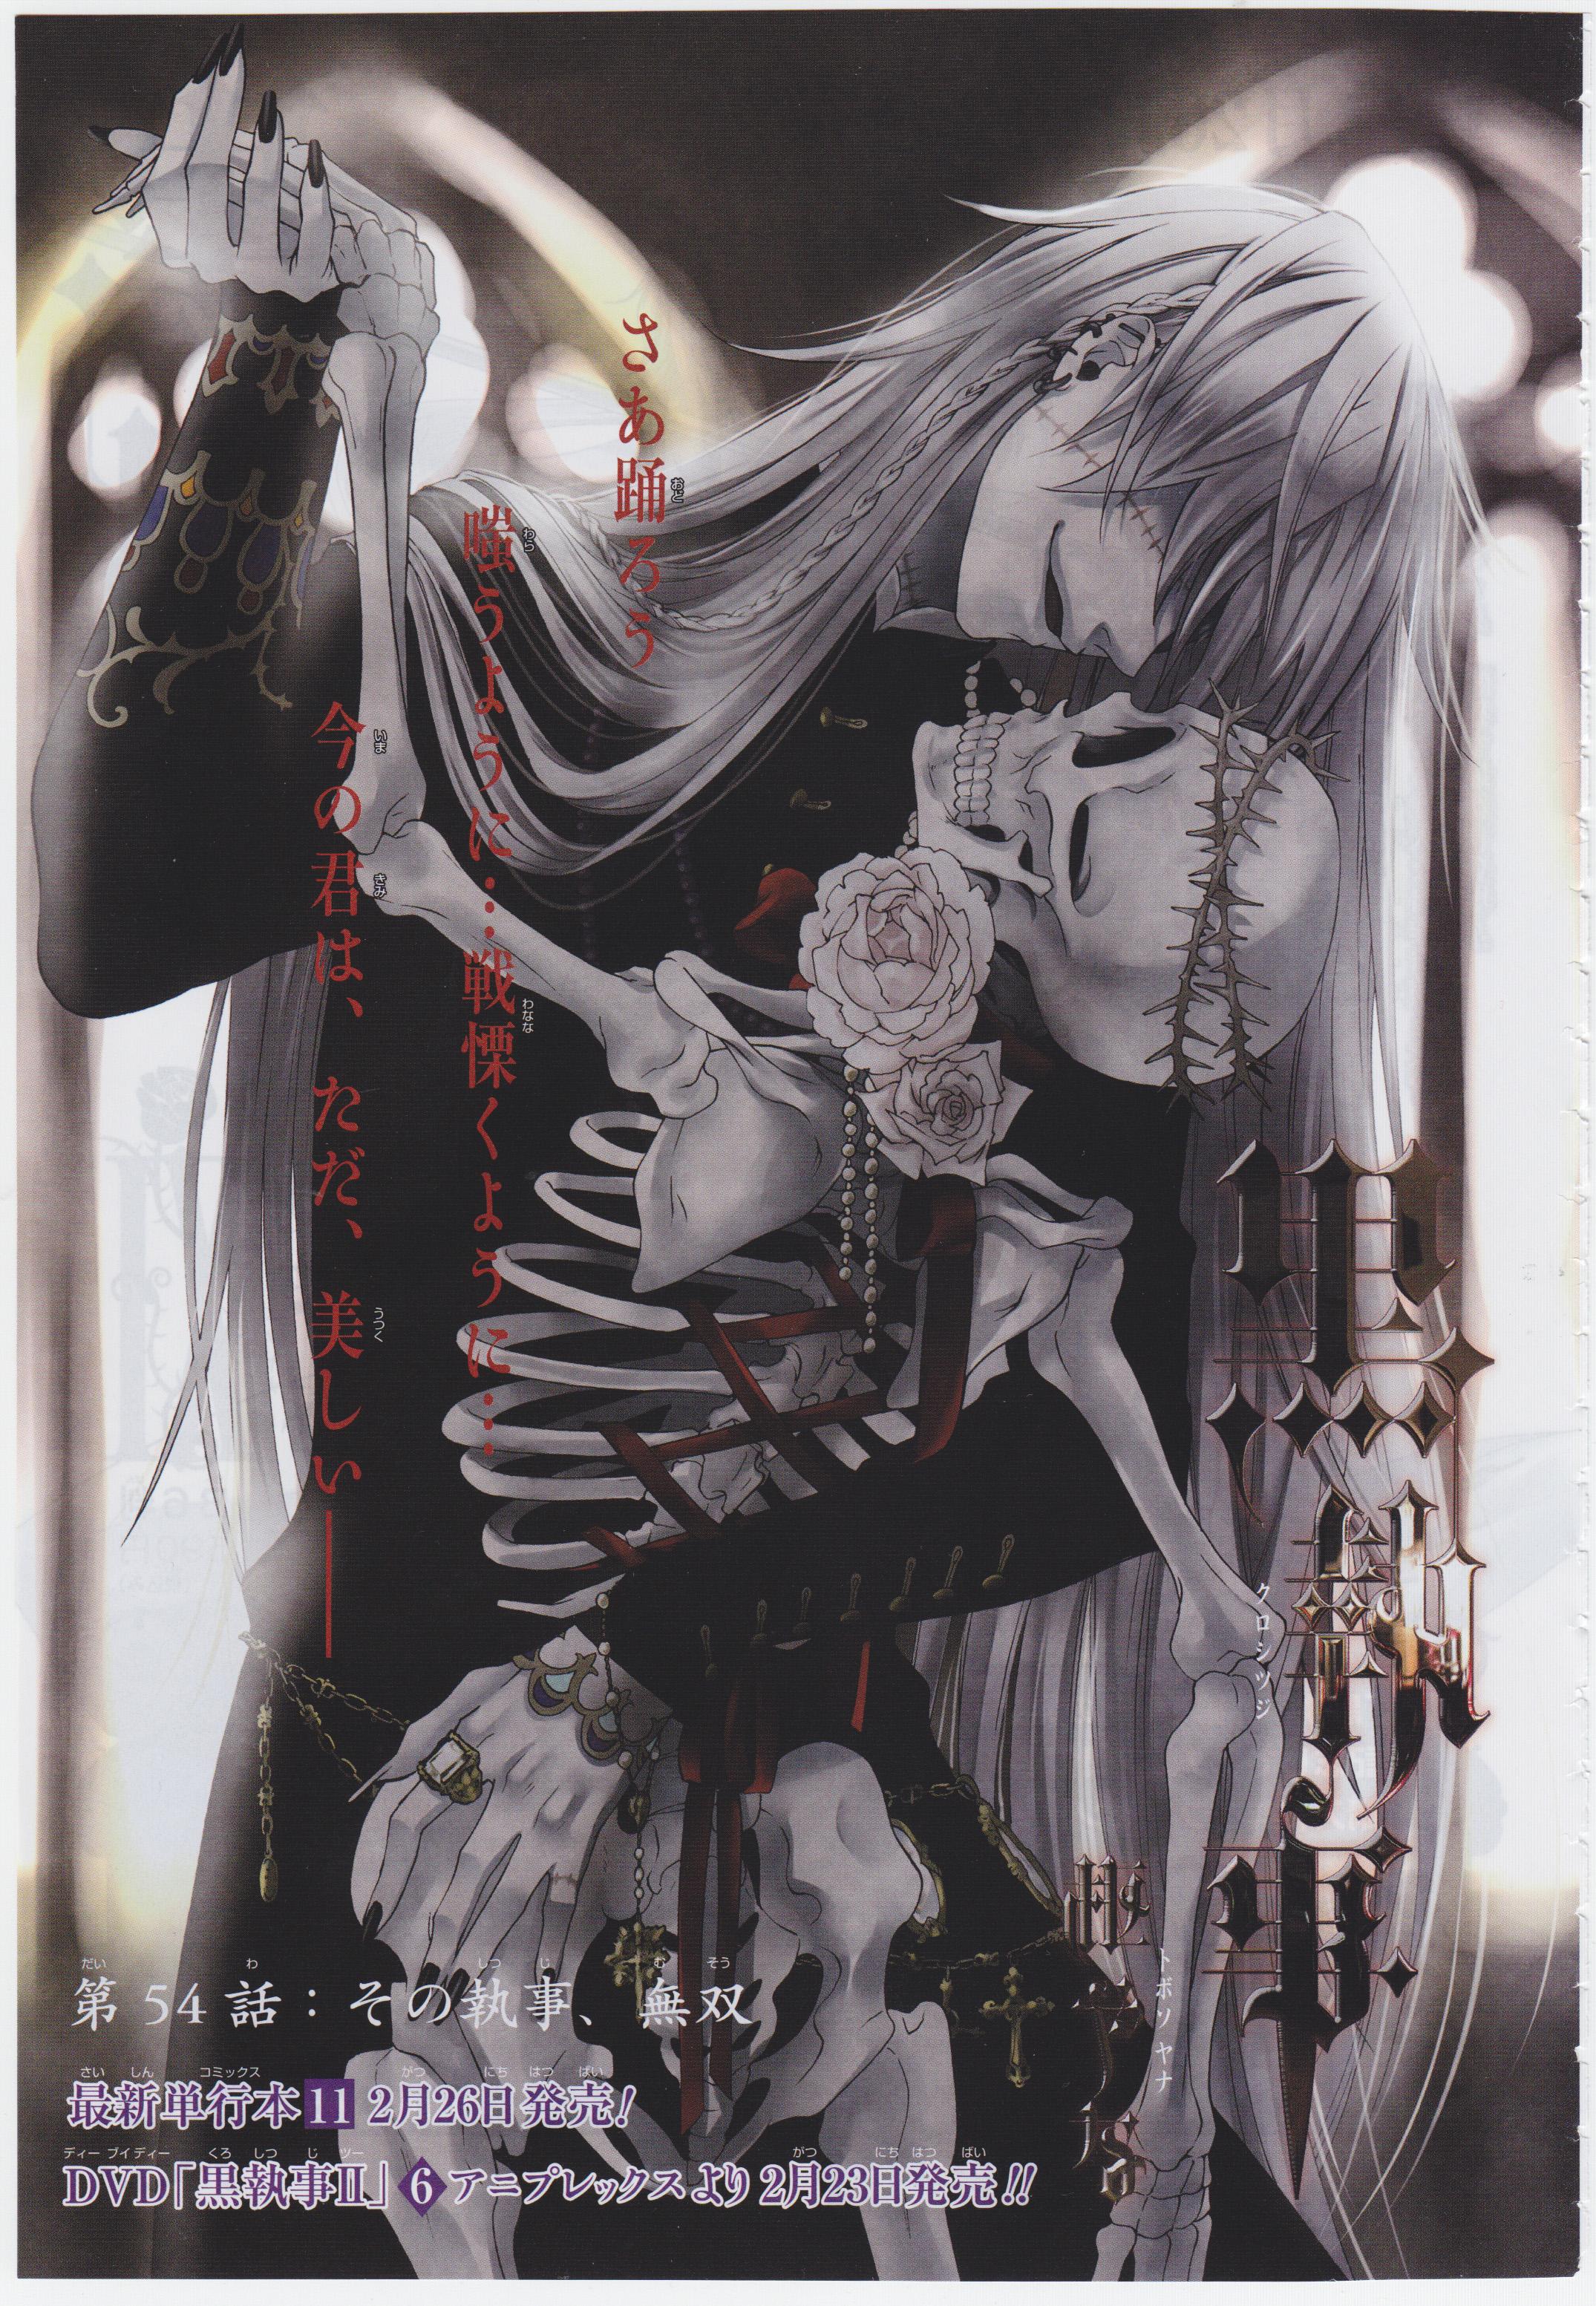 Kuroshitsuji (Black Butler) Yana Anime Image Board